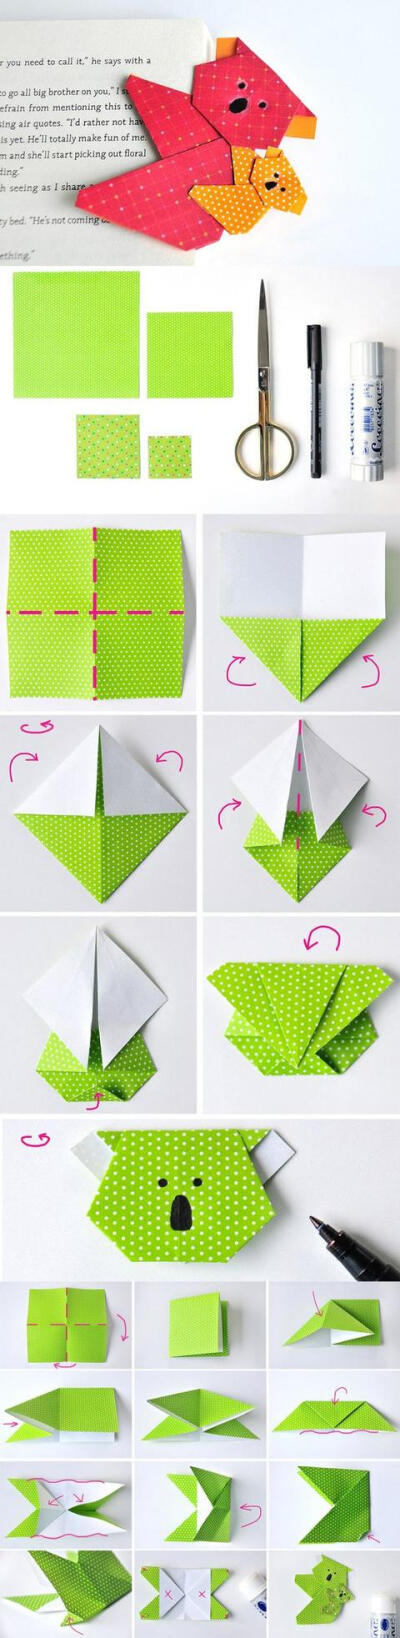 收集   点赞  评论  折纸の书签 0 3 桩桩宝贝  发布到  折纸 图片